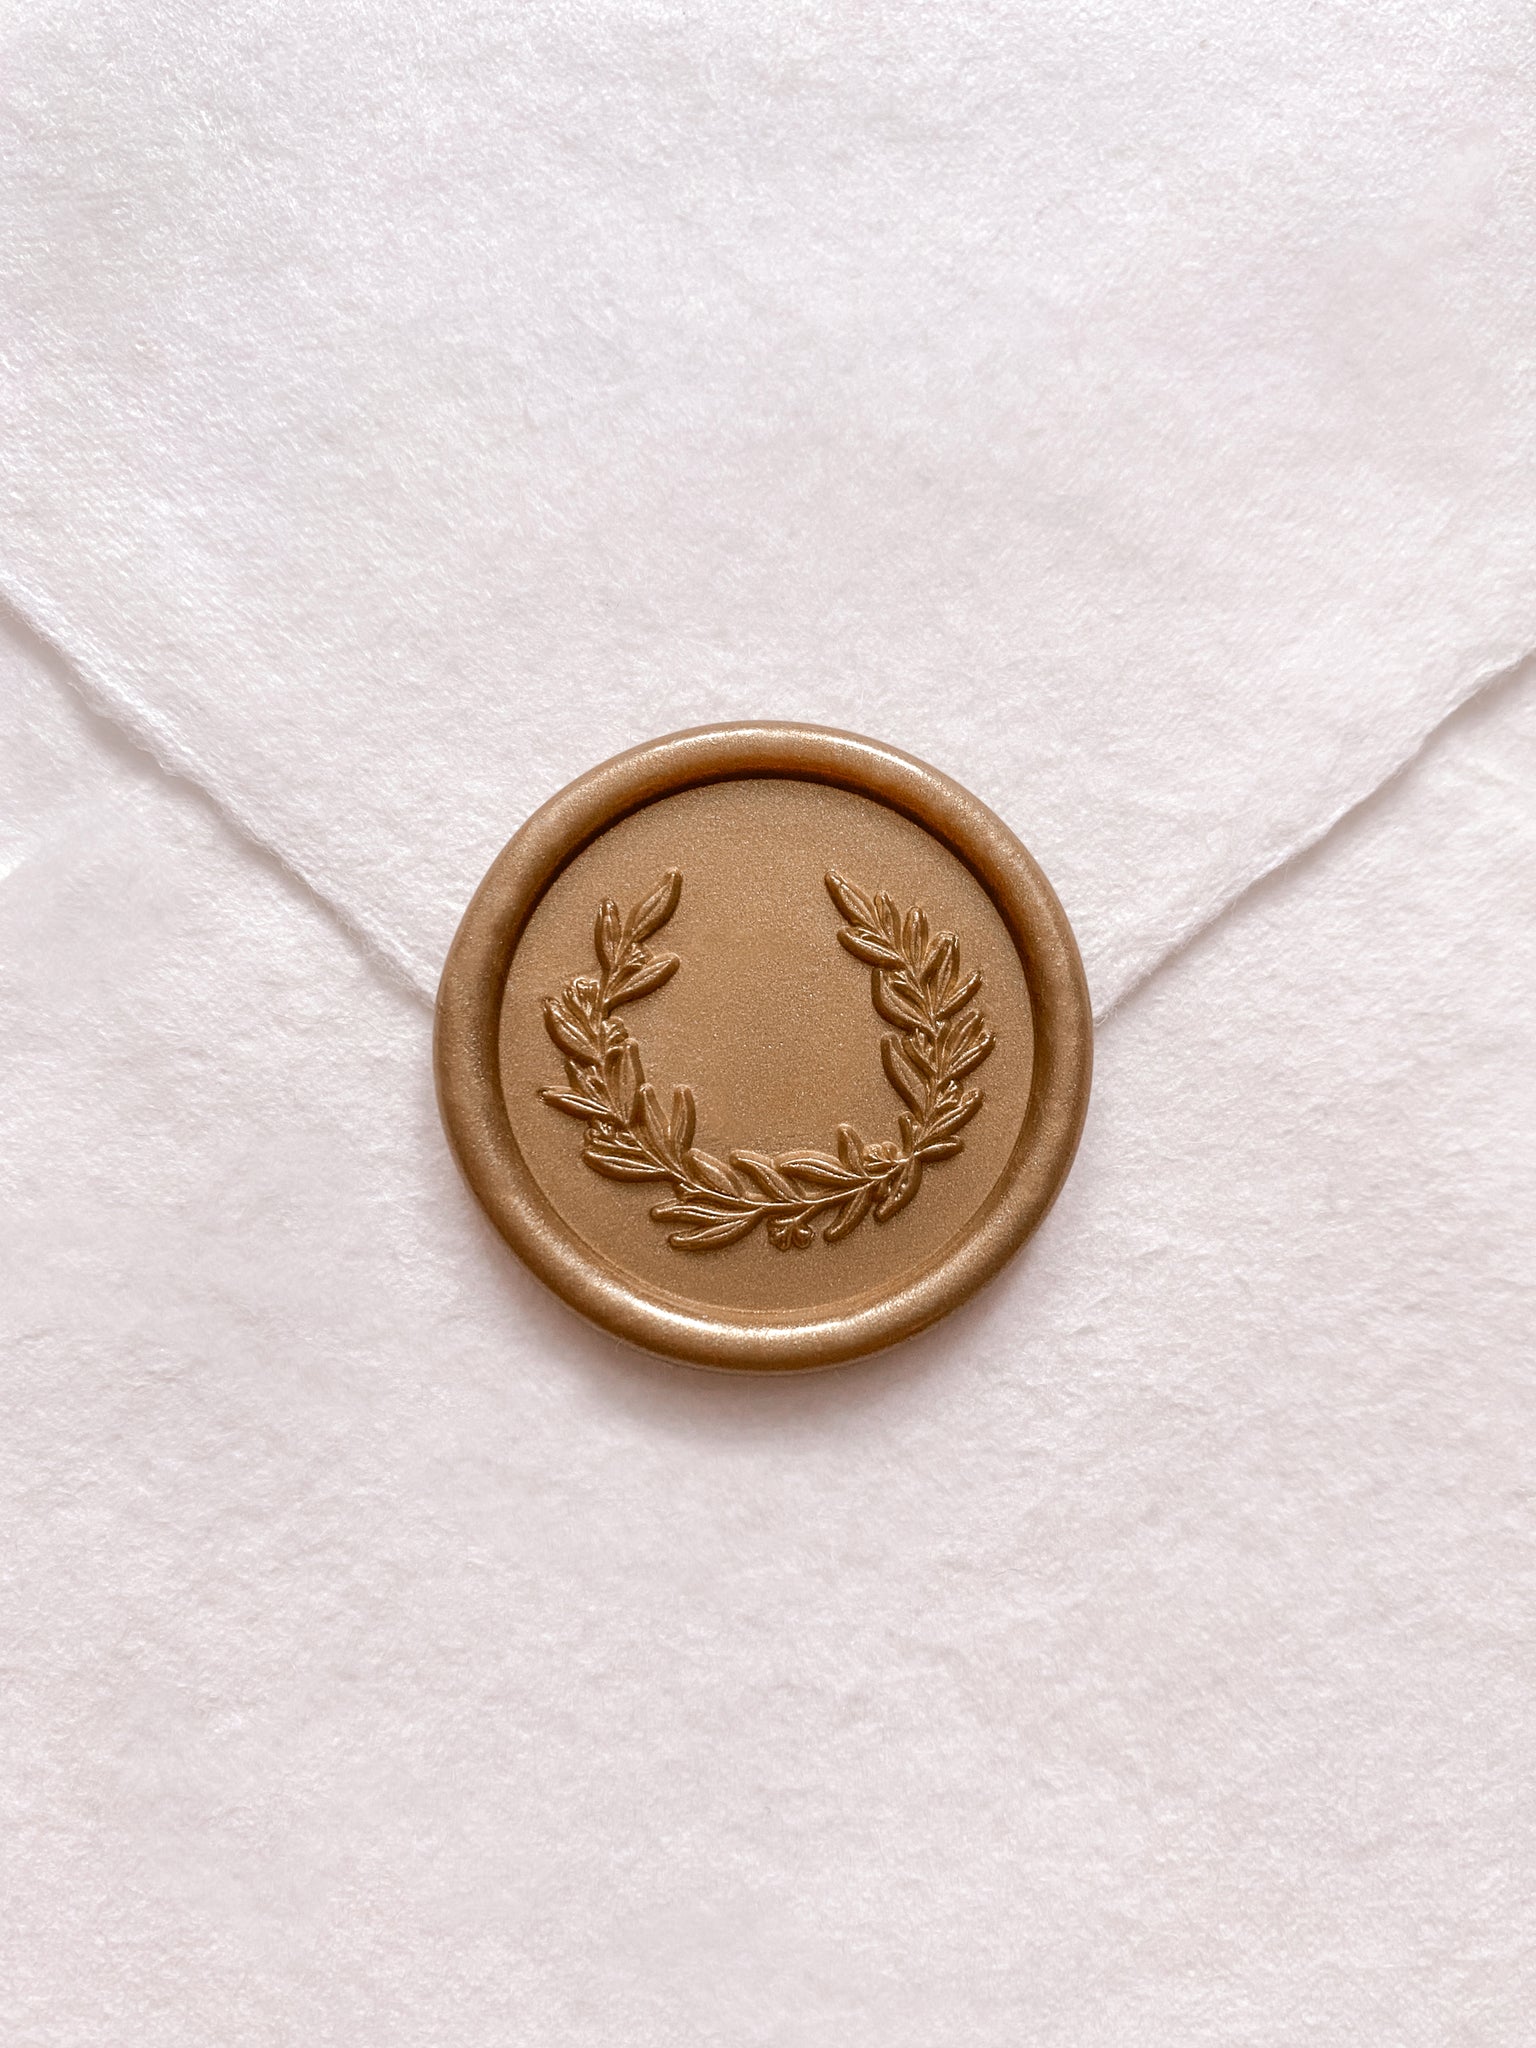 Gold garden wreath design wax seal on beige handmade paper envelope